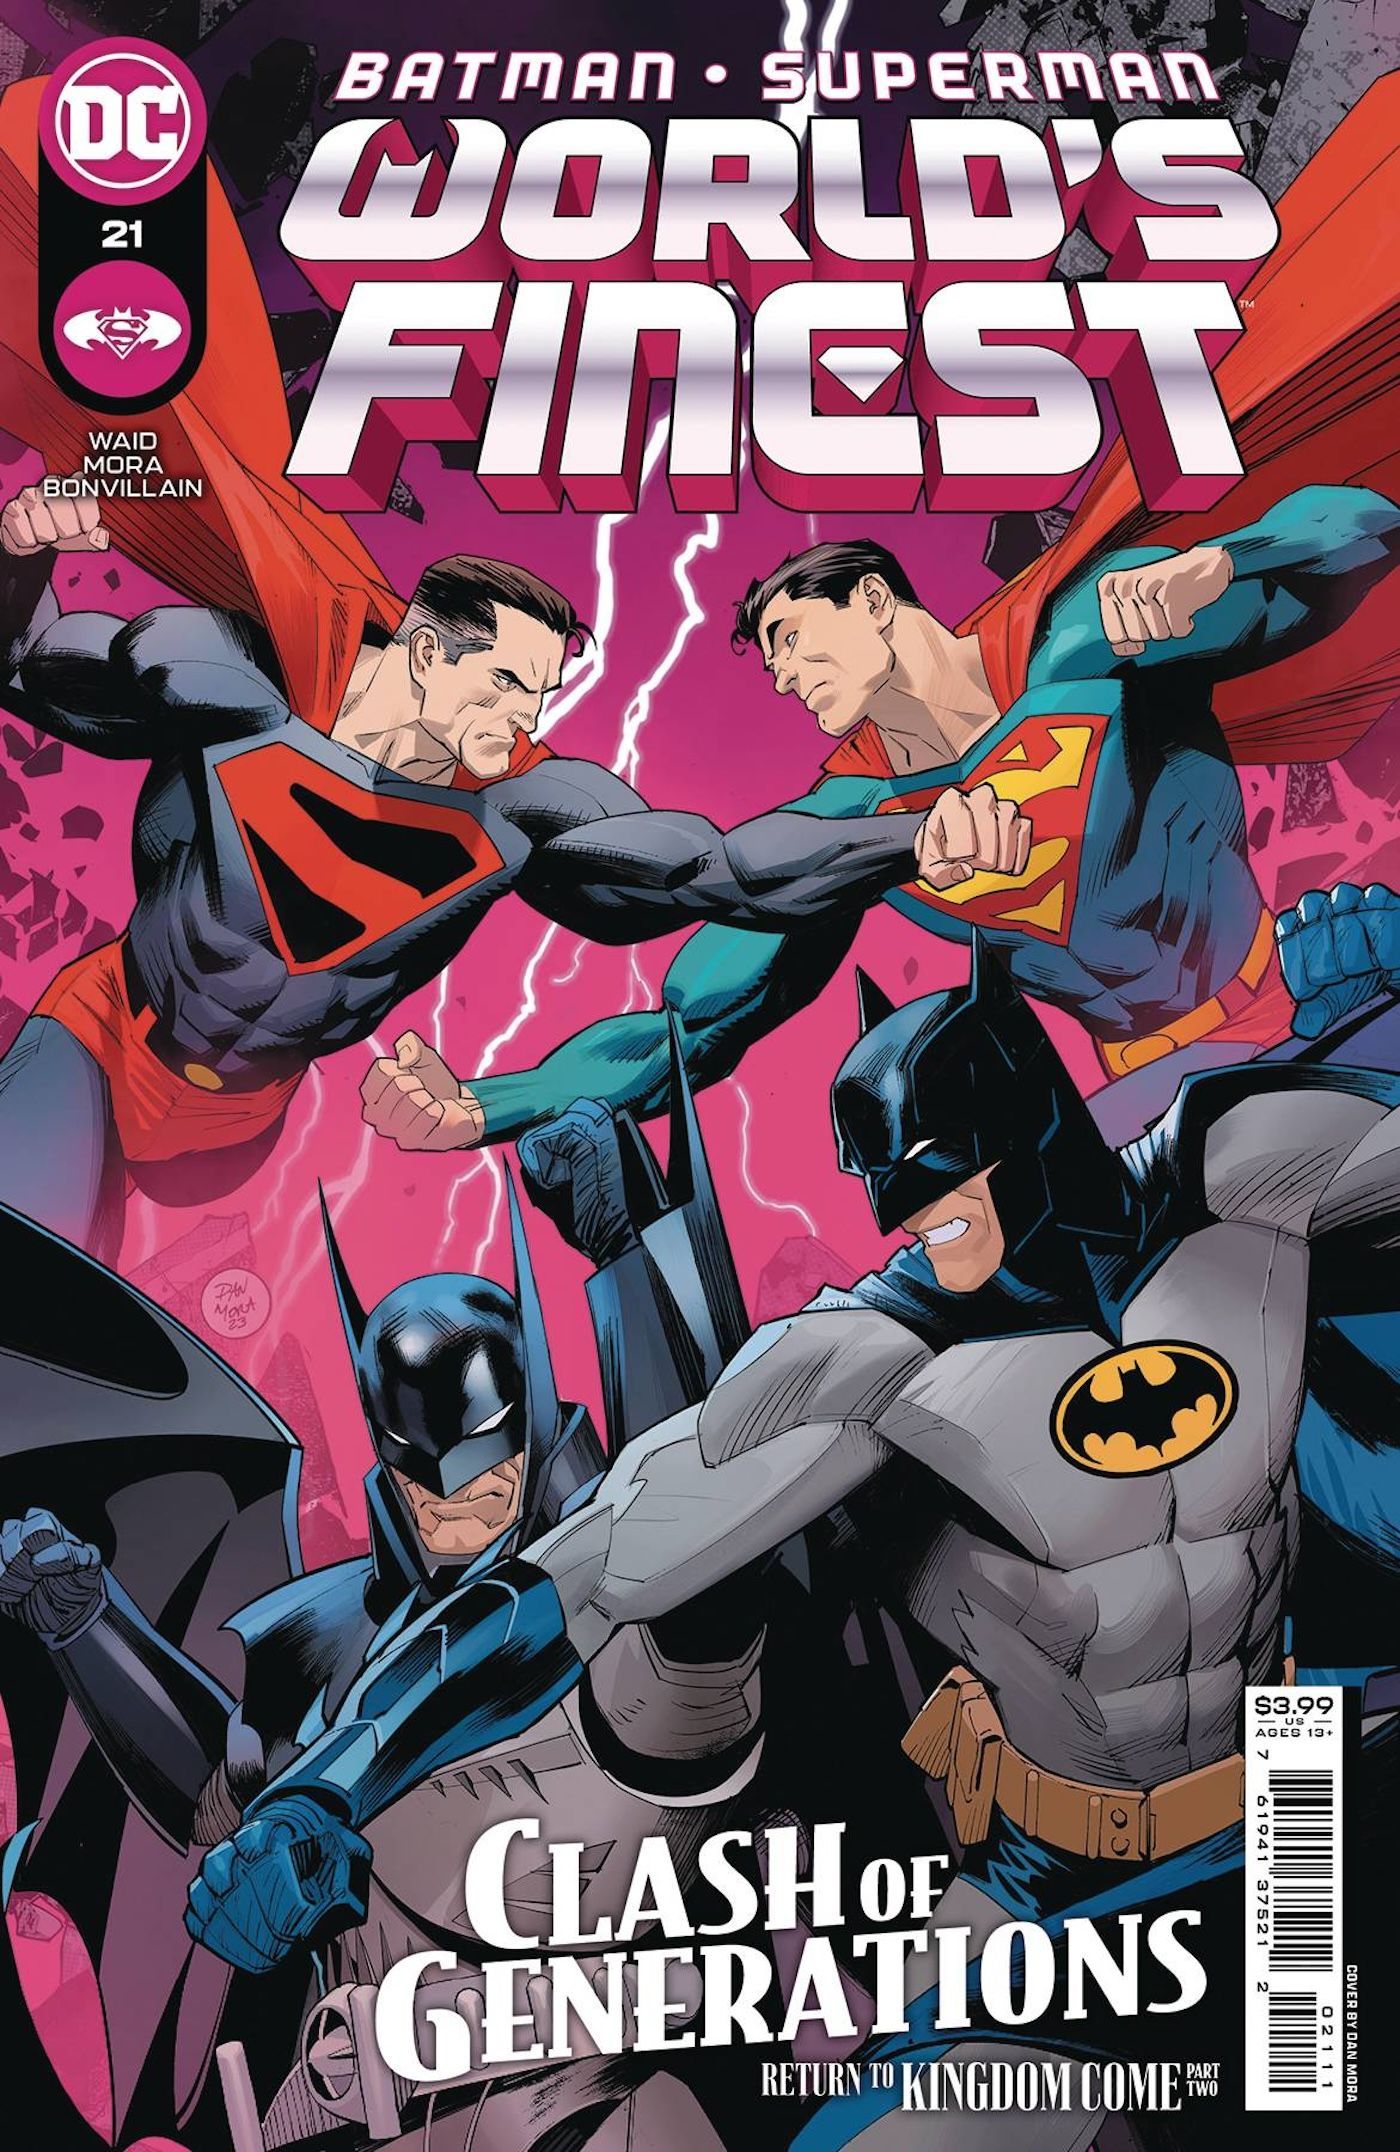 Batman/Superman: World's Finest 21 Hauptcover: Kostüm-Superhelden aus zwei alternativen Welten kämpfen.